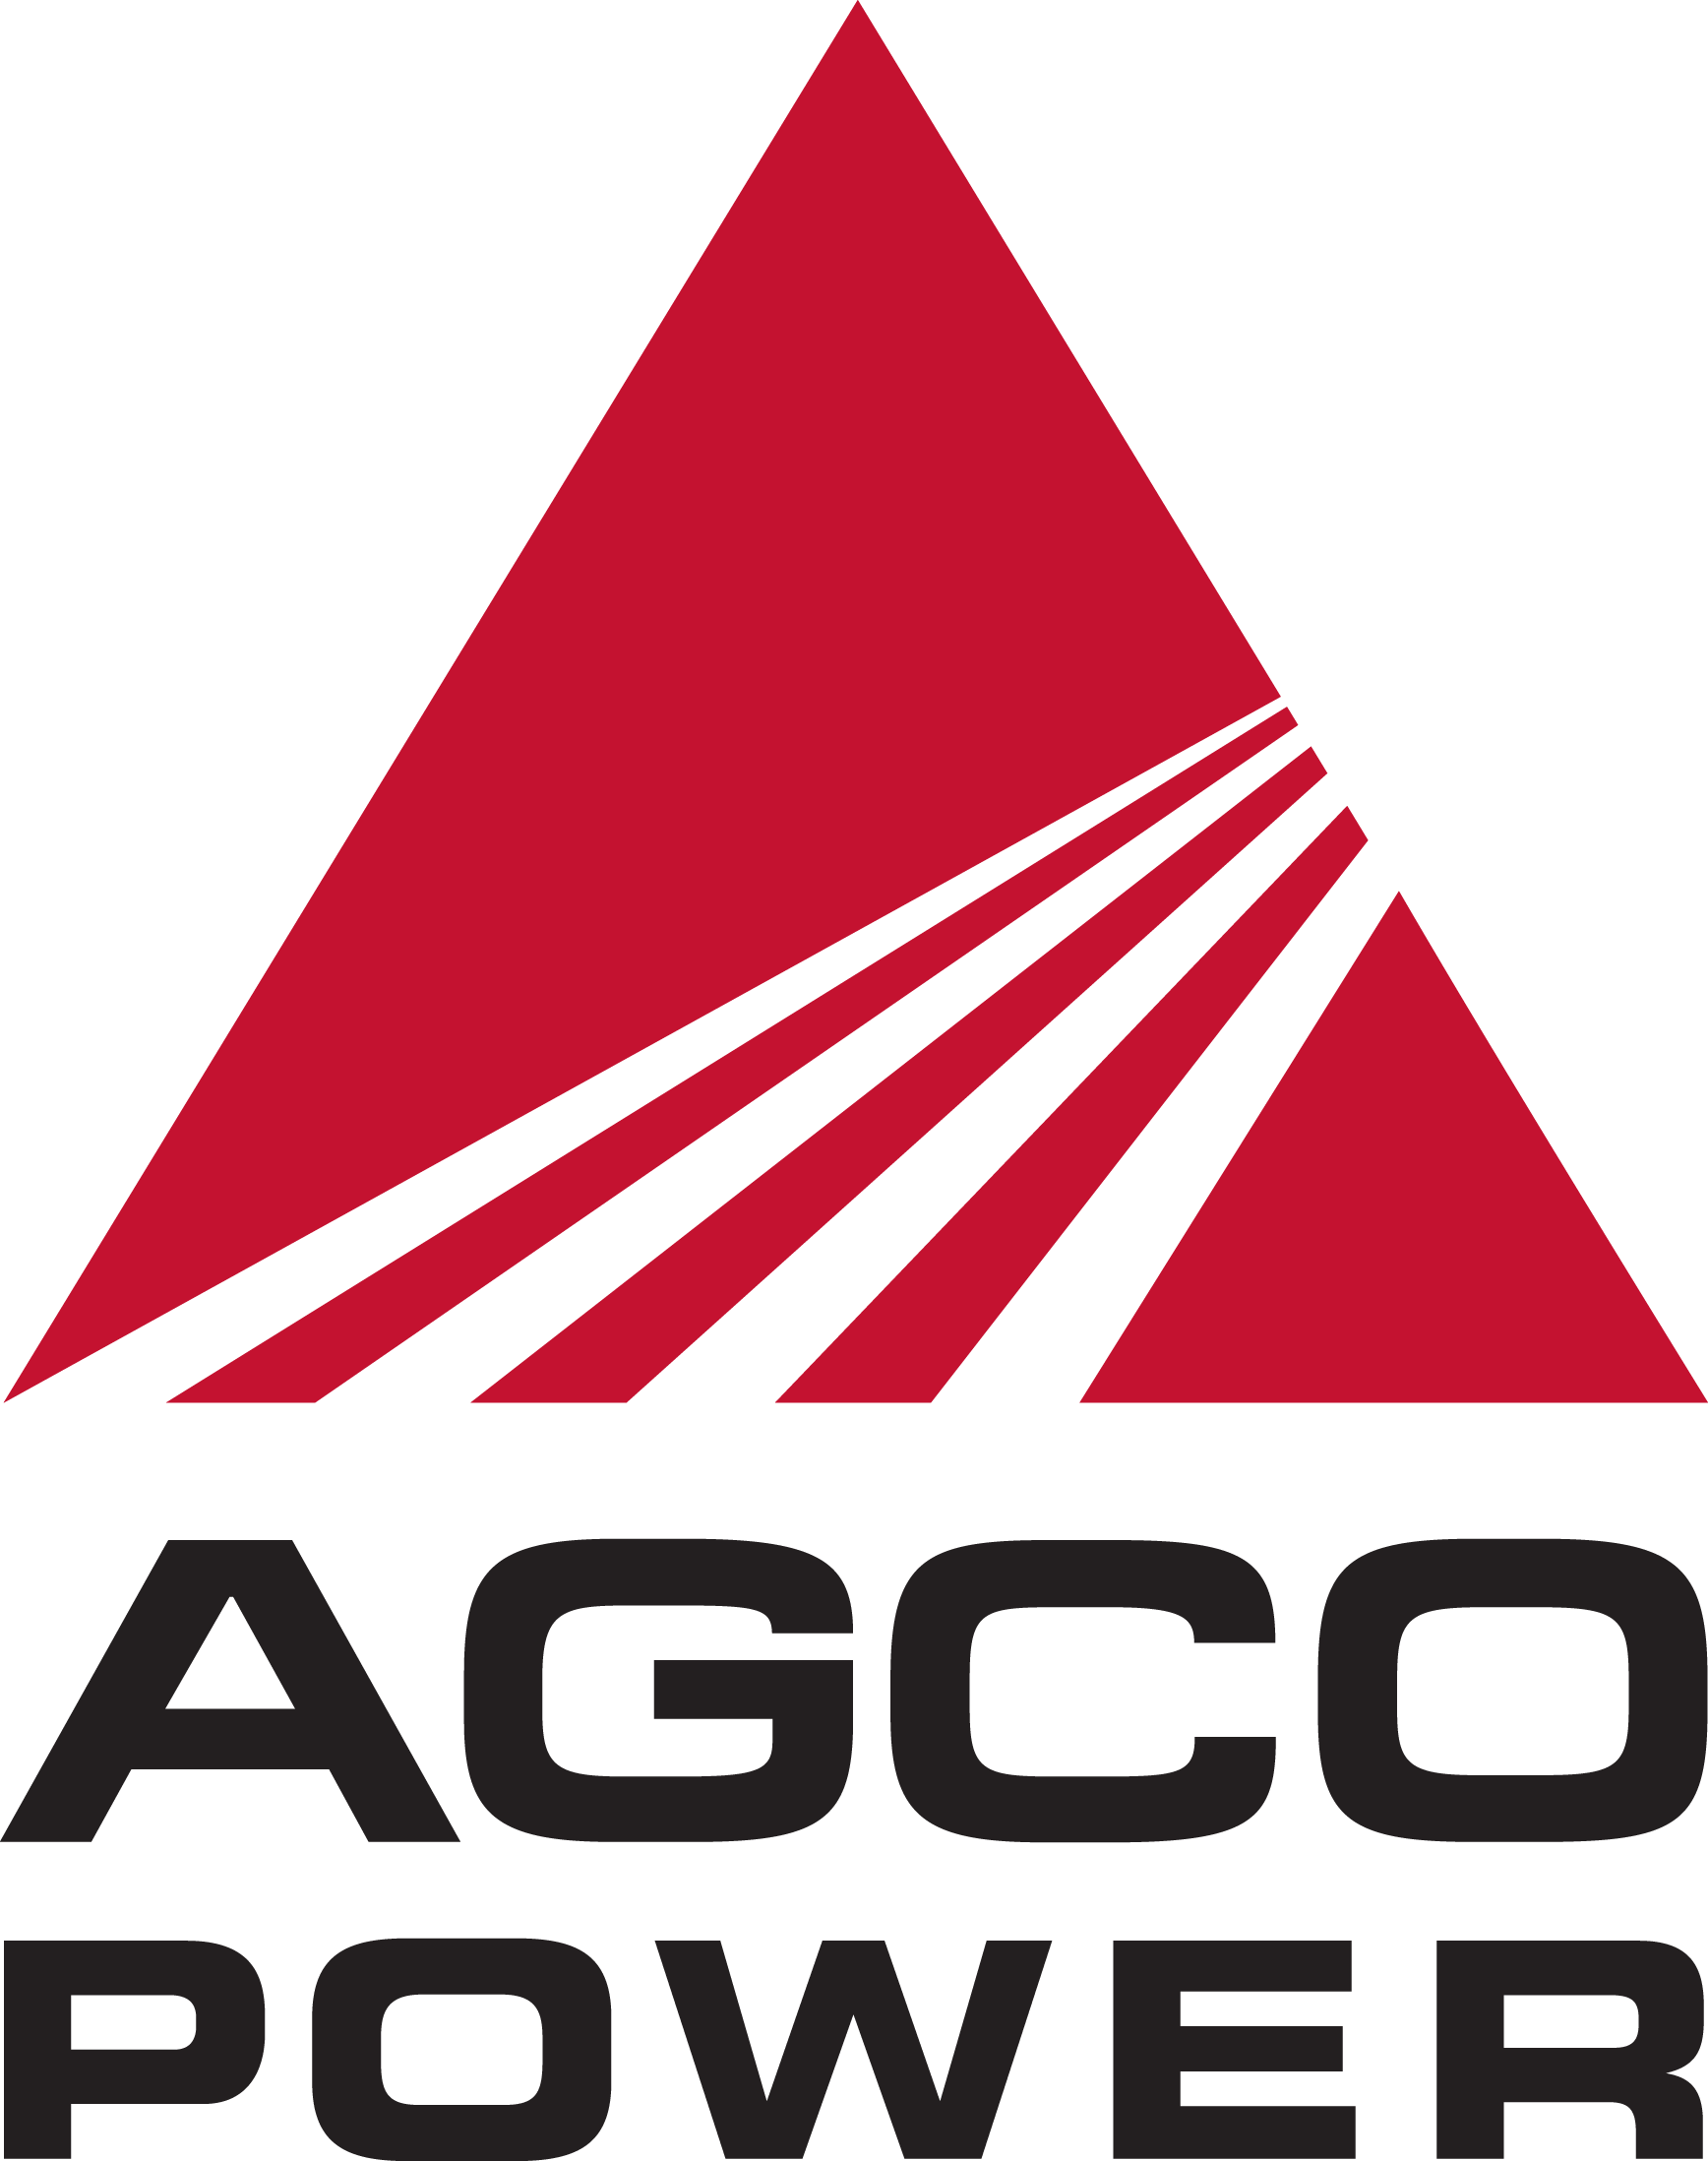 Agco Power-logo